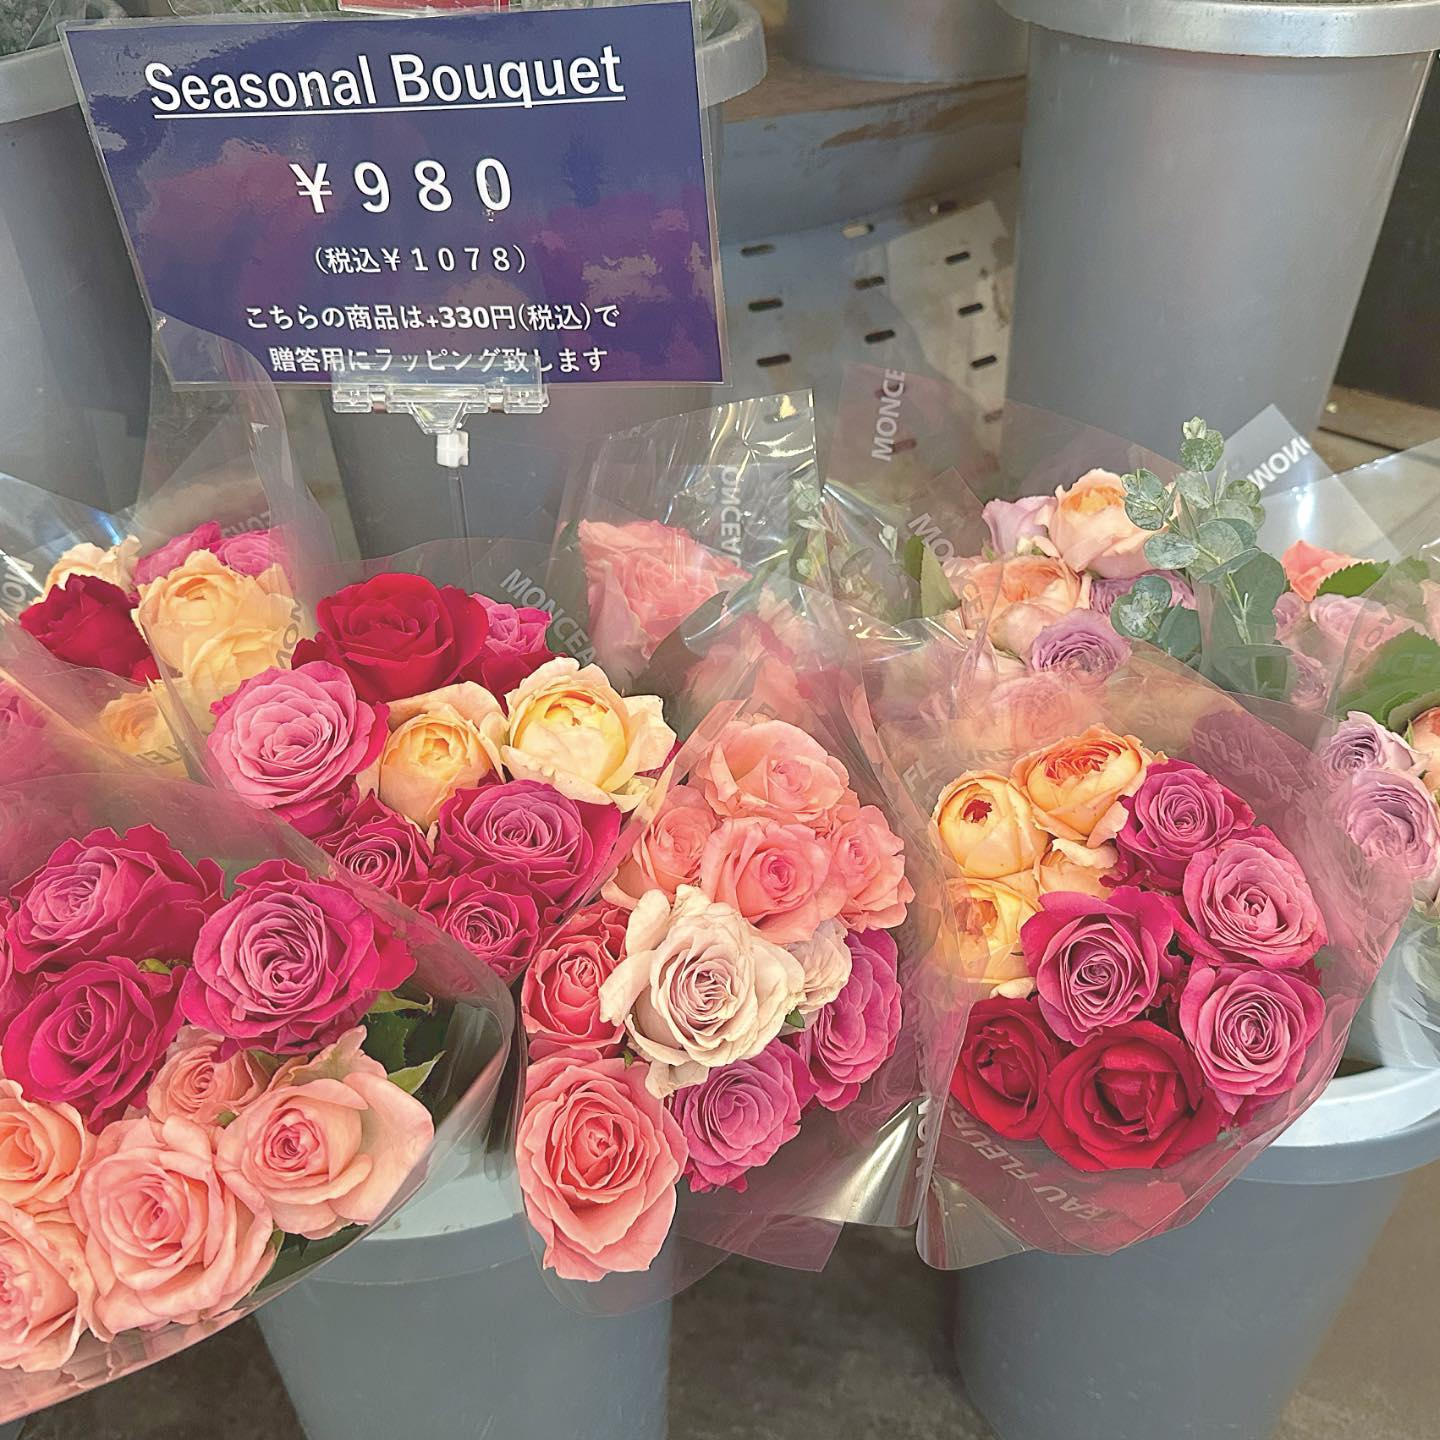 モンソーフルール自由が丘本店です🗣️
バラ+ユーカリの花束
980円(税抜)でとってもお得です️
暑い夏だからこそ、🫠️
お花で気分をあげませんか